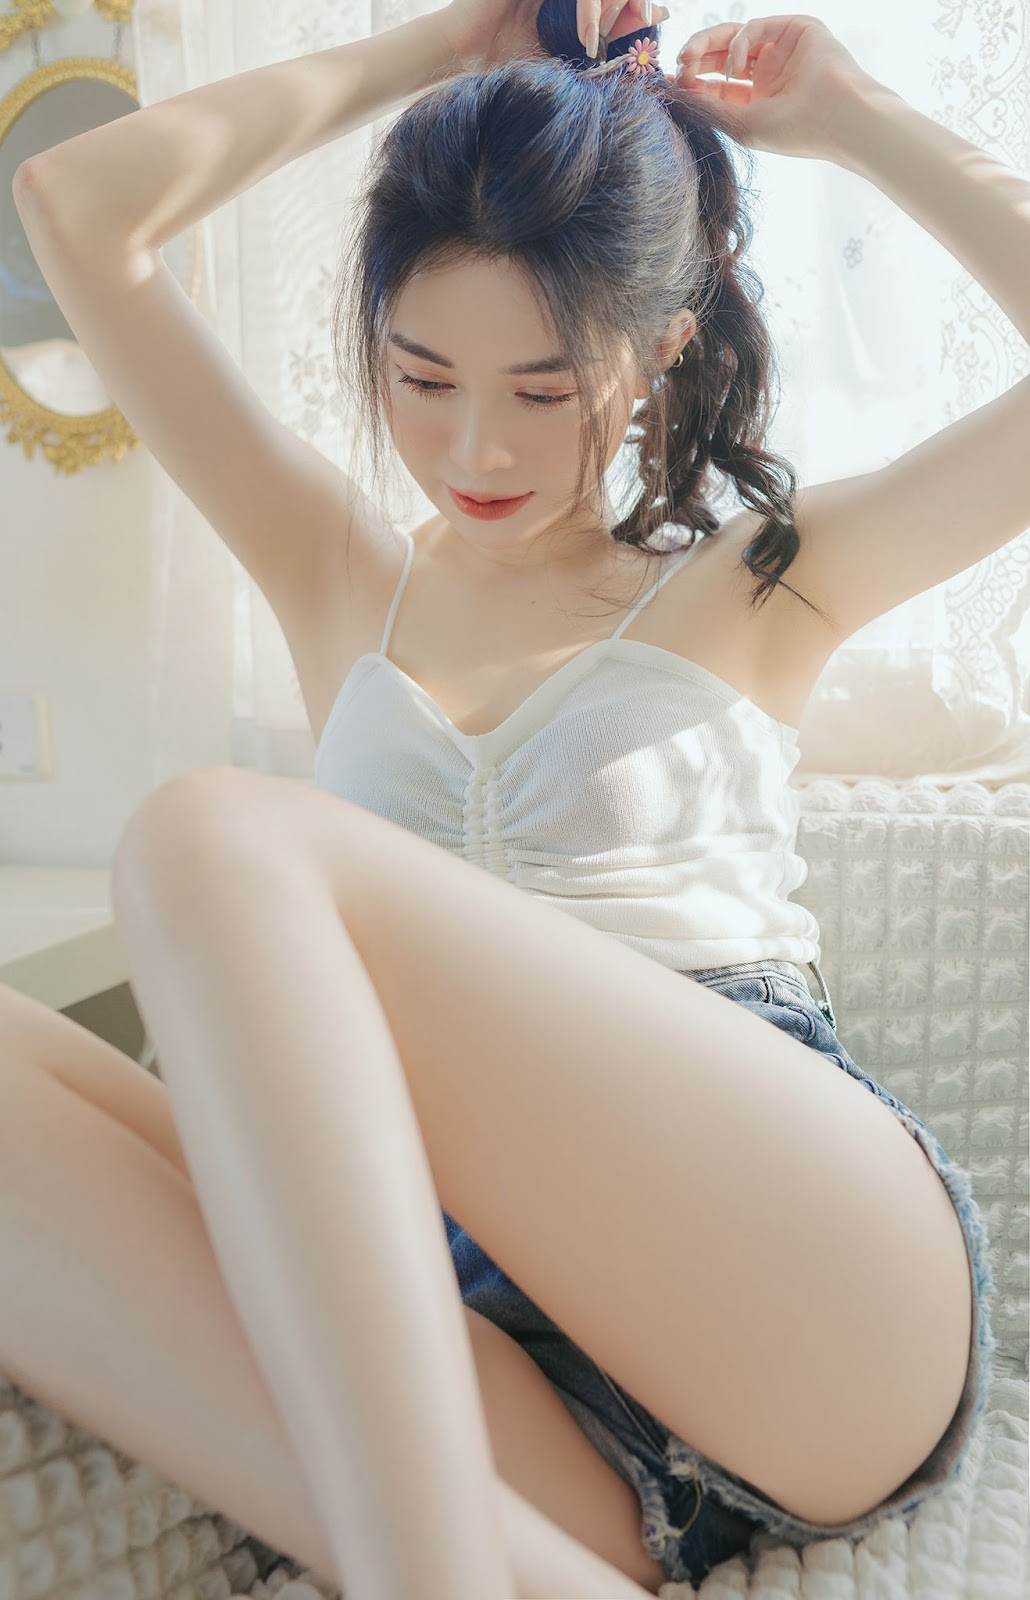 Tiểu sử hot girl Thúy Hằng - Nữ streamer kiêm người mẫu ảnh xinh xắn - 4